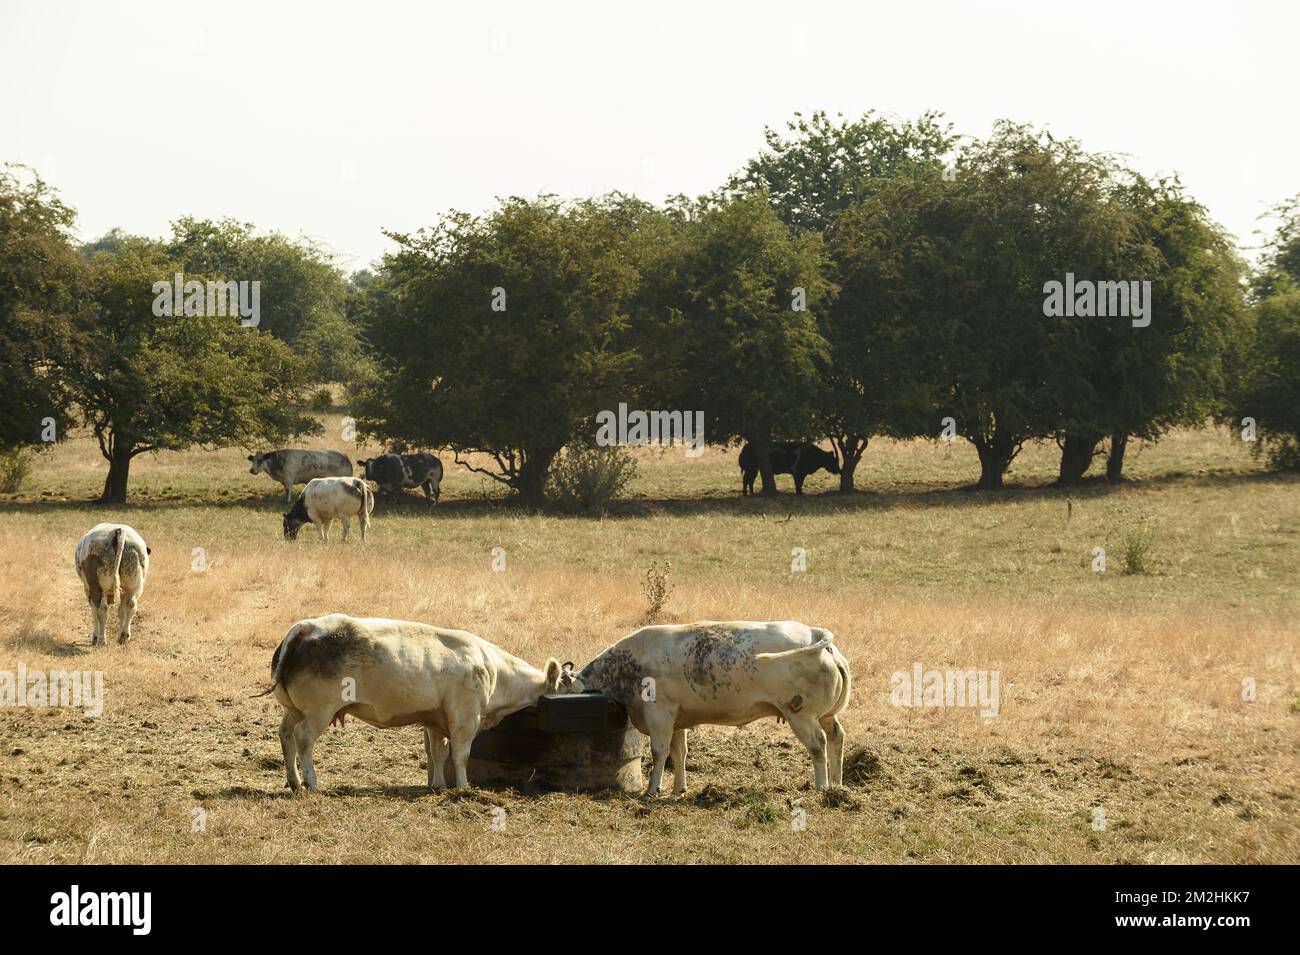 Mucche in un prato essiccato. L'erba è gialla | l'herbe est jaune et les vaches sont fatiguees par la chaleur ereintante de la canicule. 05/08/2018 Foto Stock